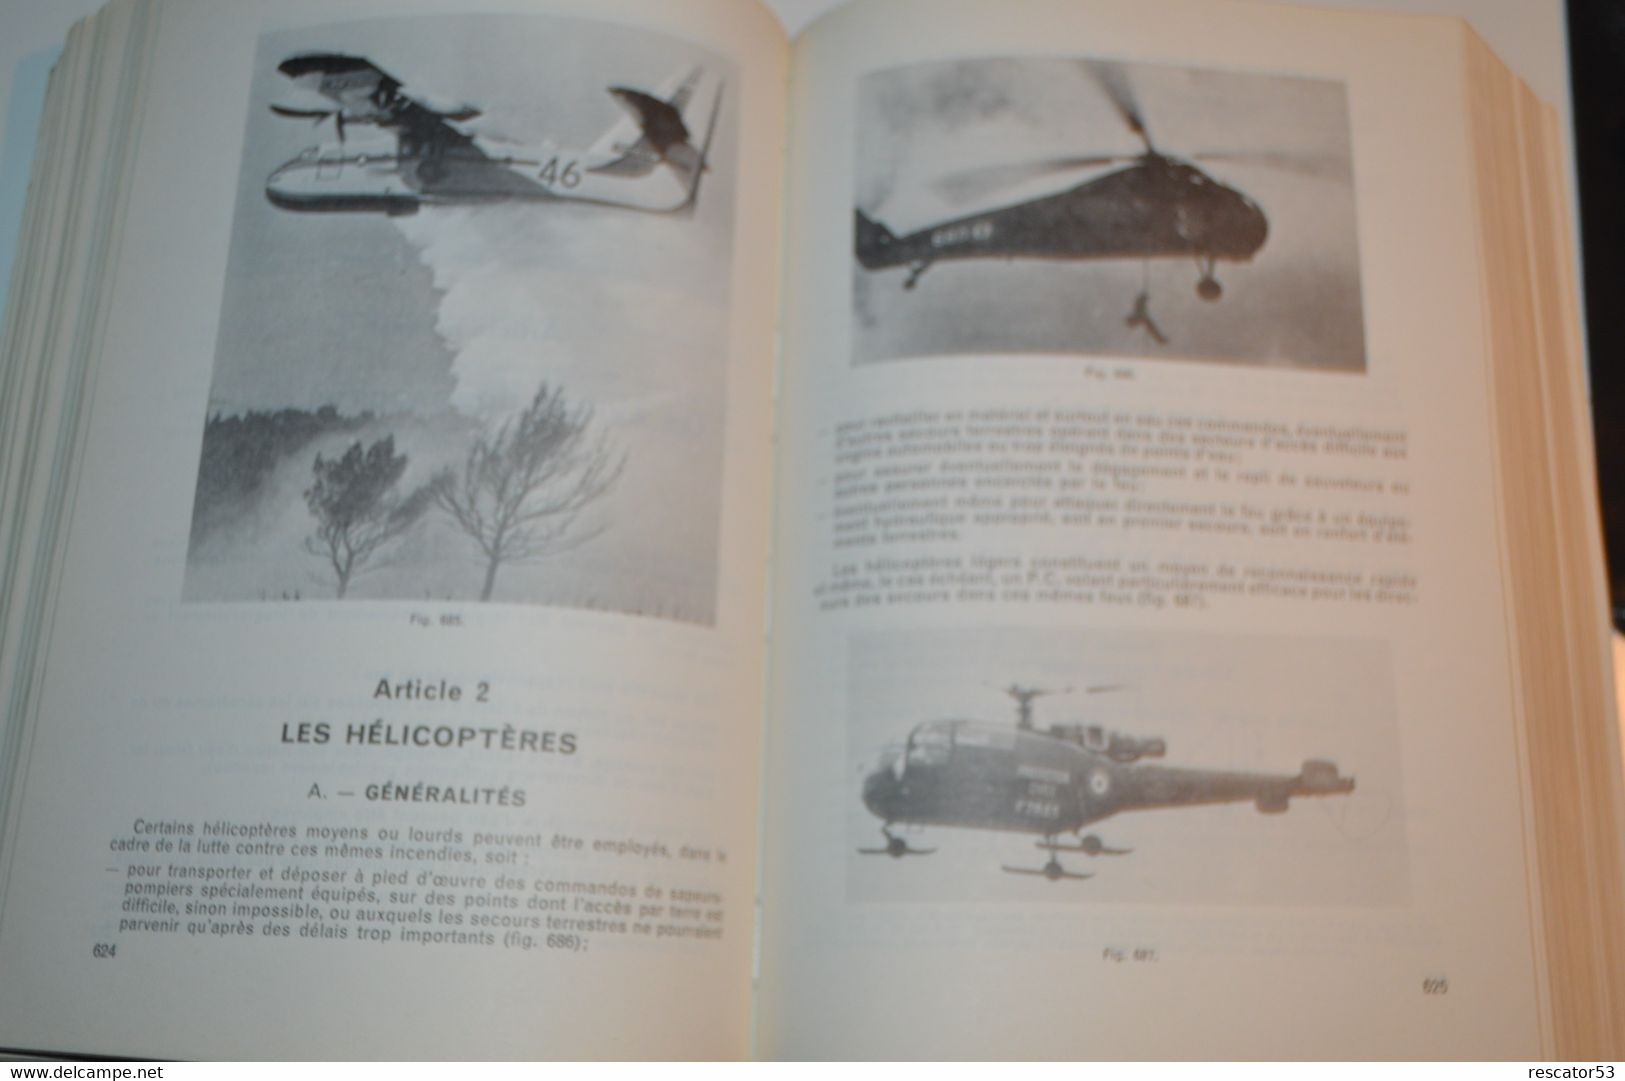 Rare Livre Règlement D'instruction Et De Manoeuvre Des Sapeurs Pompiers Communaux 1978 - Bomberos